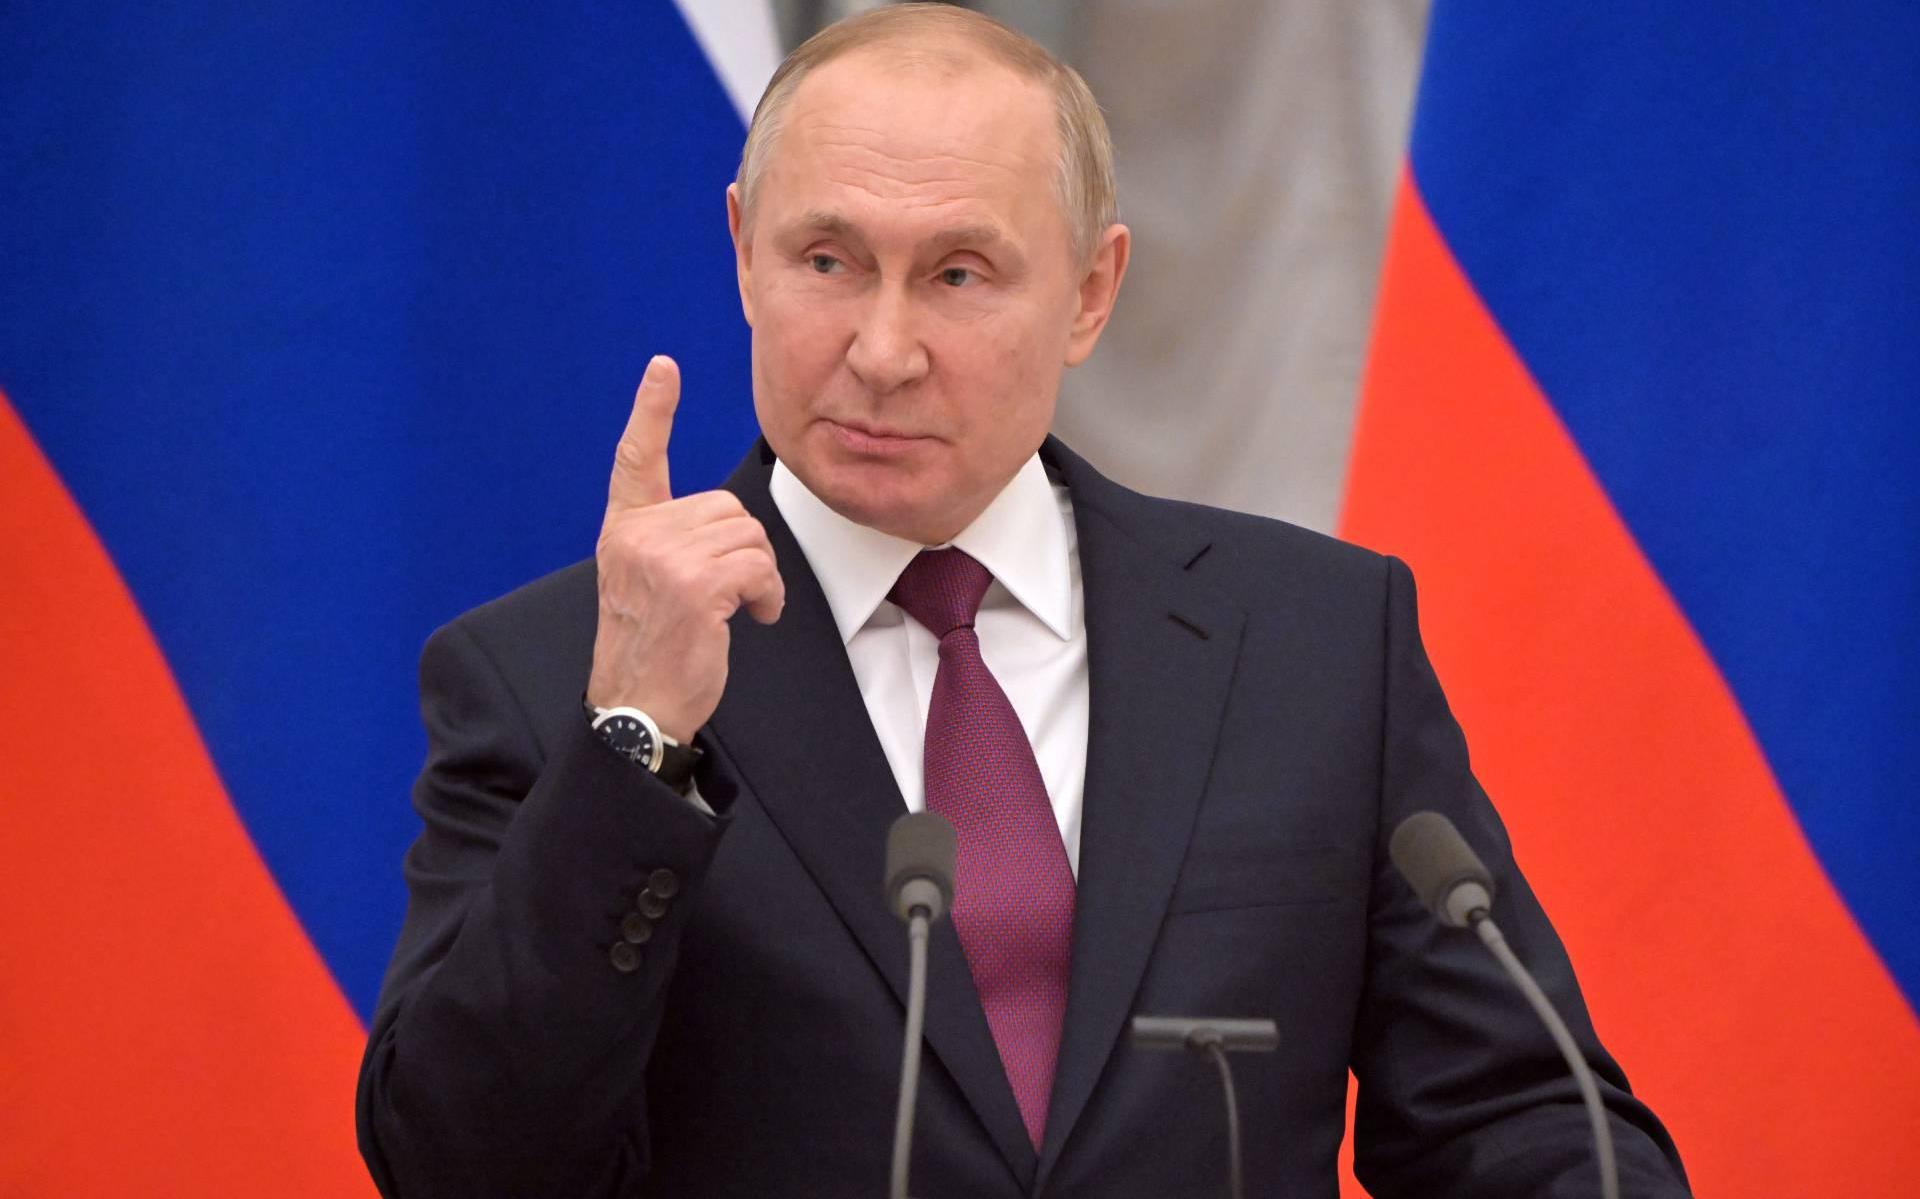 Poetin verklaart vredesakkoord voor Oost-Oekraïne dood